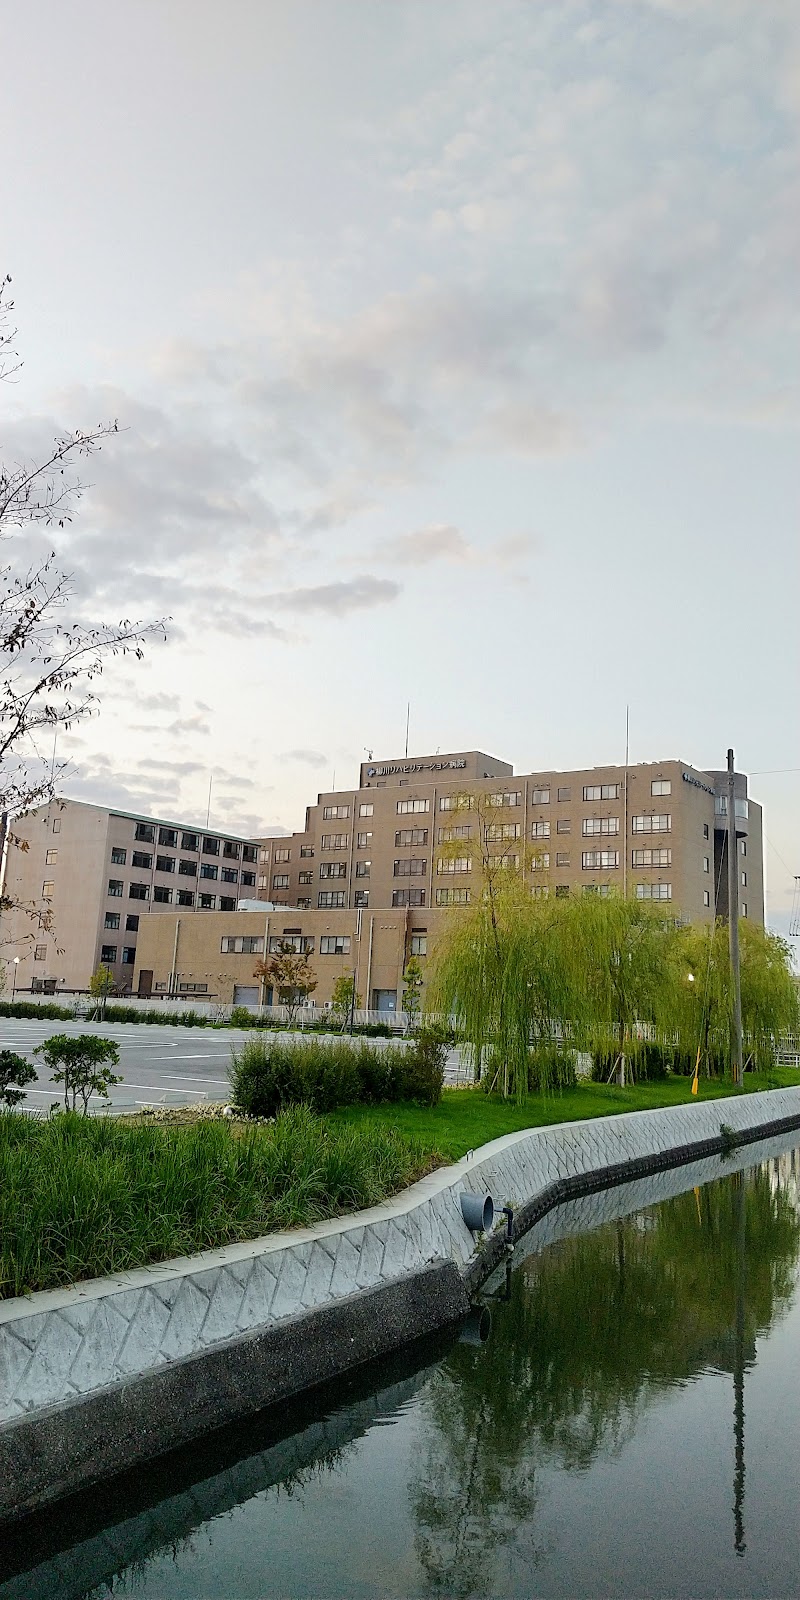 柳川リハビリテーション病院